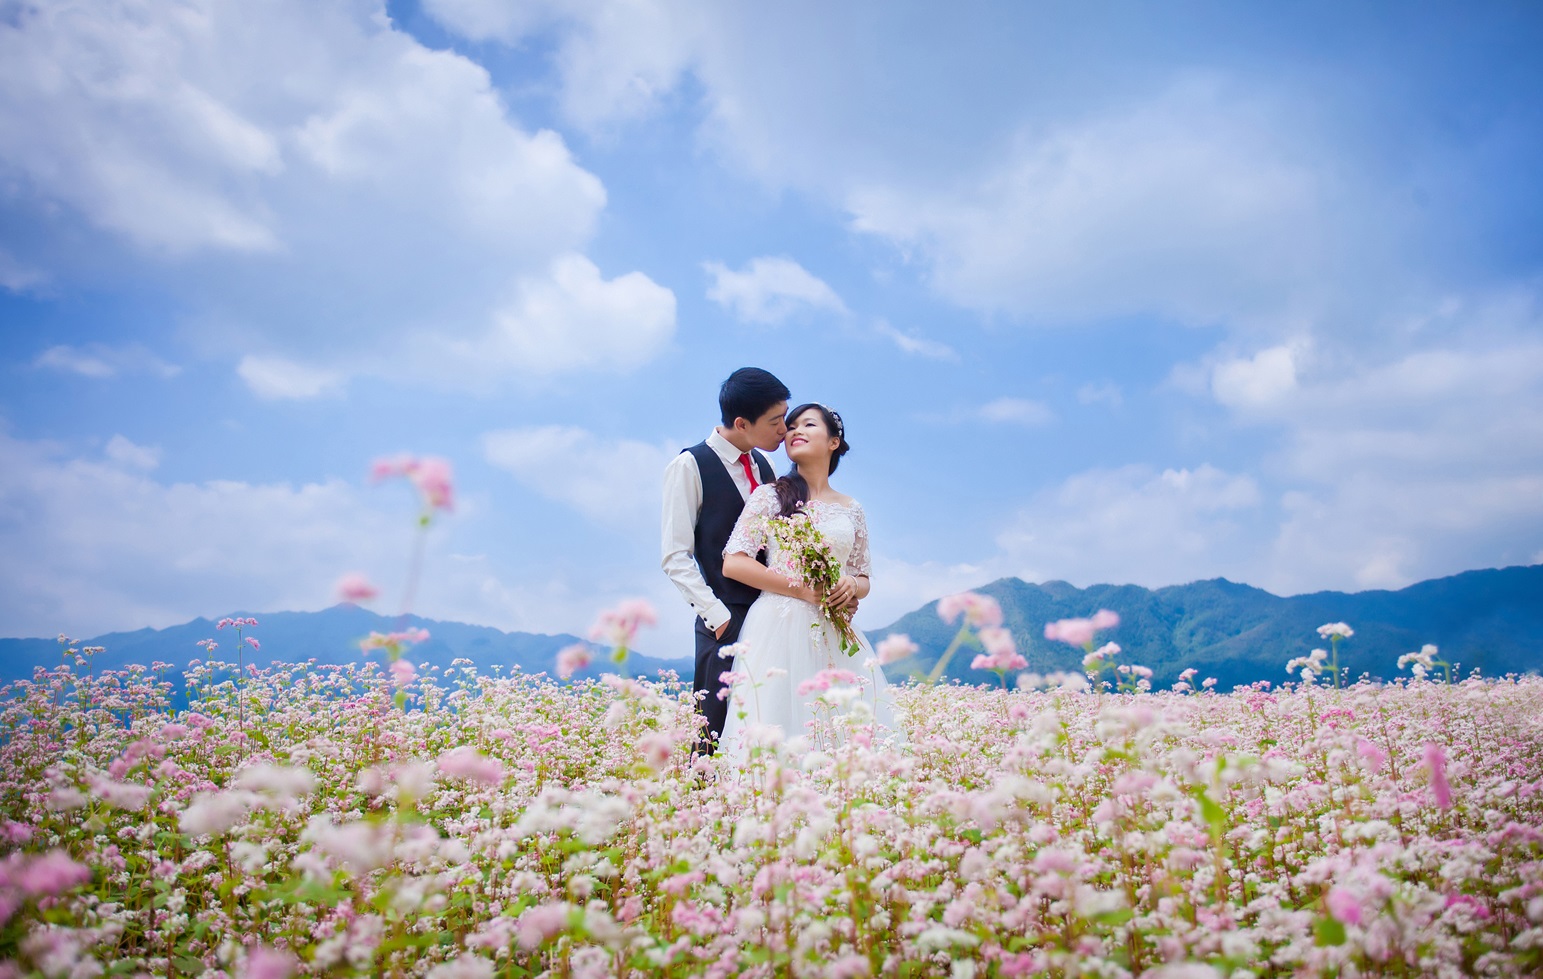 Nhiều bạn trẻ lựa chọn mùa hoa tam giác mạch để chụp ảnh cưới